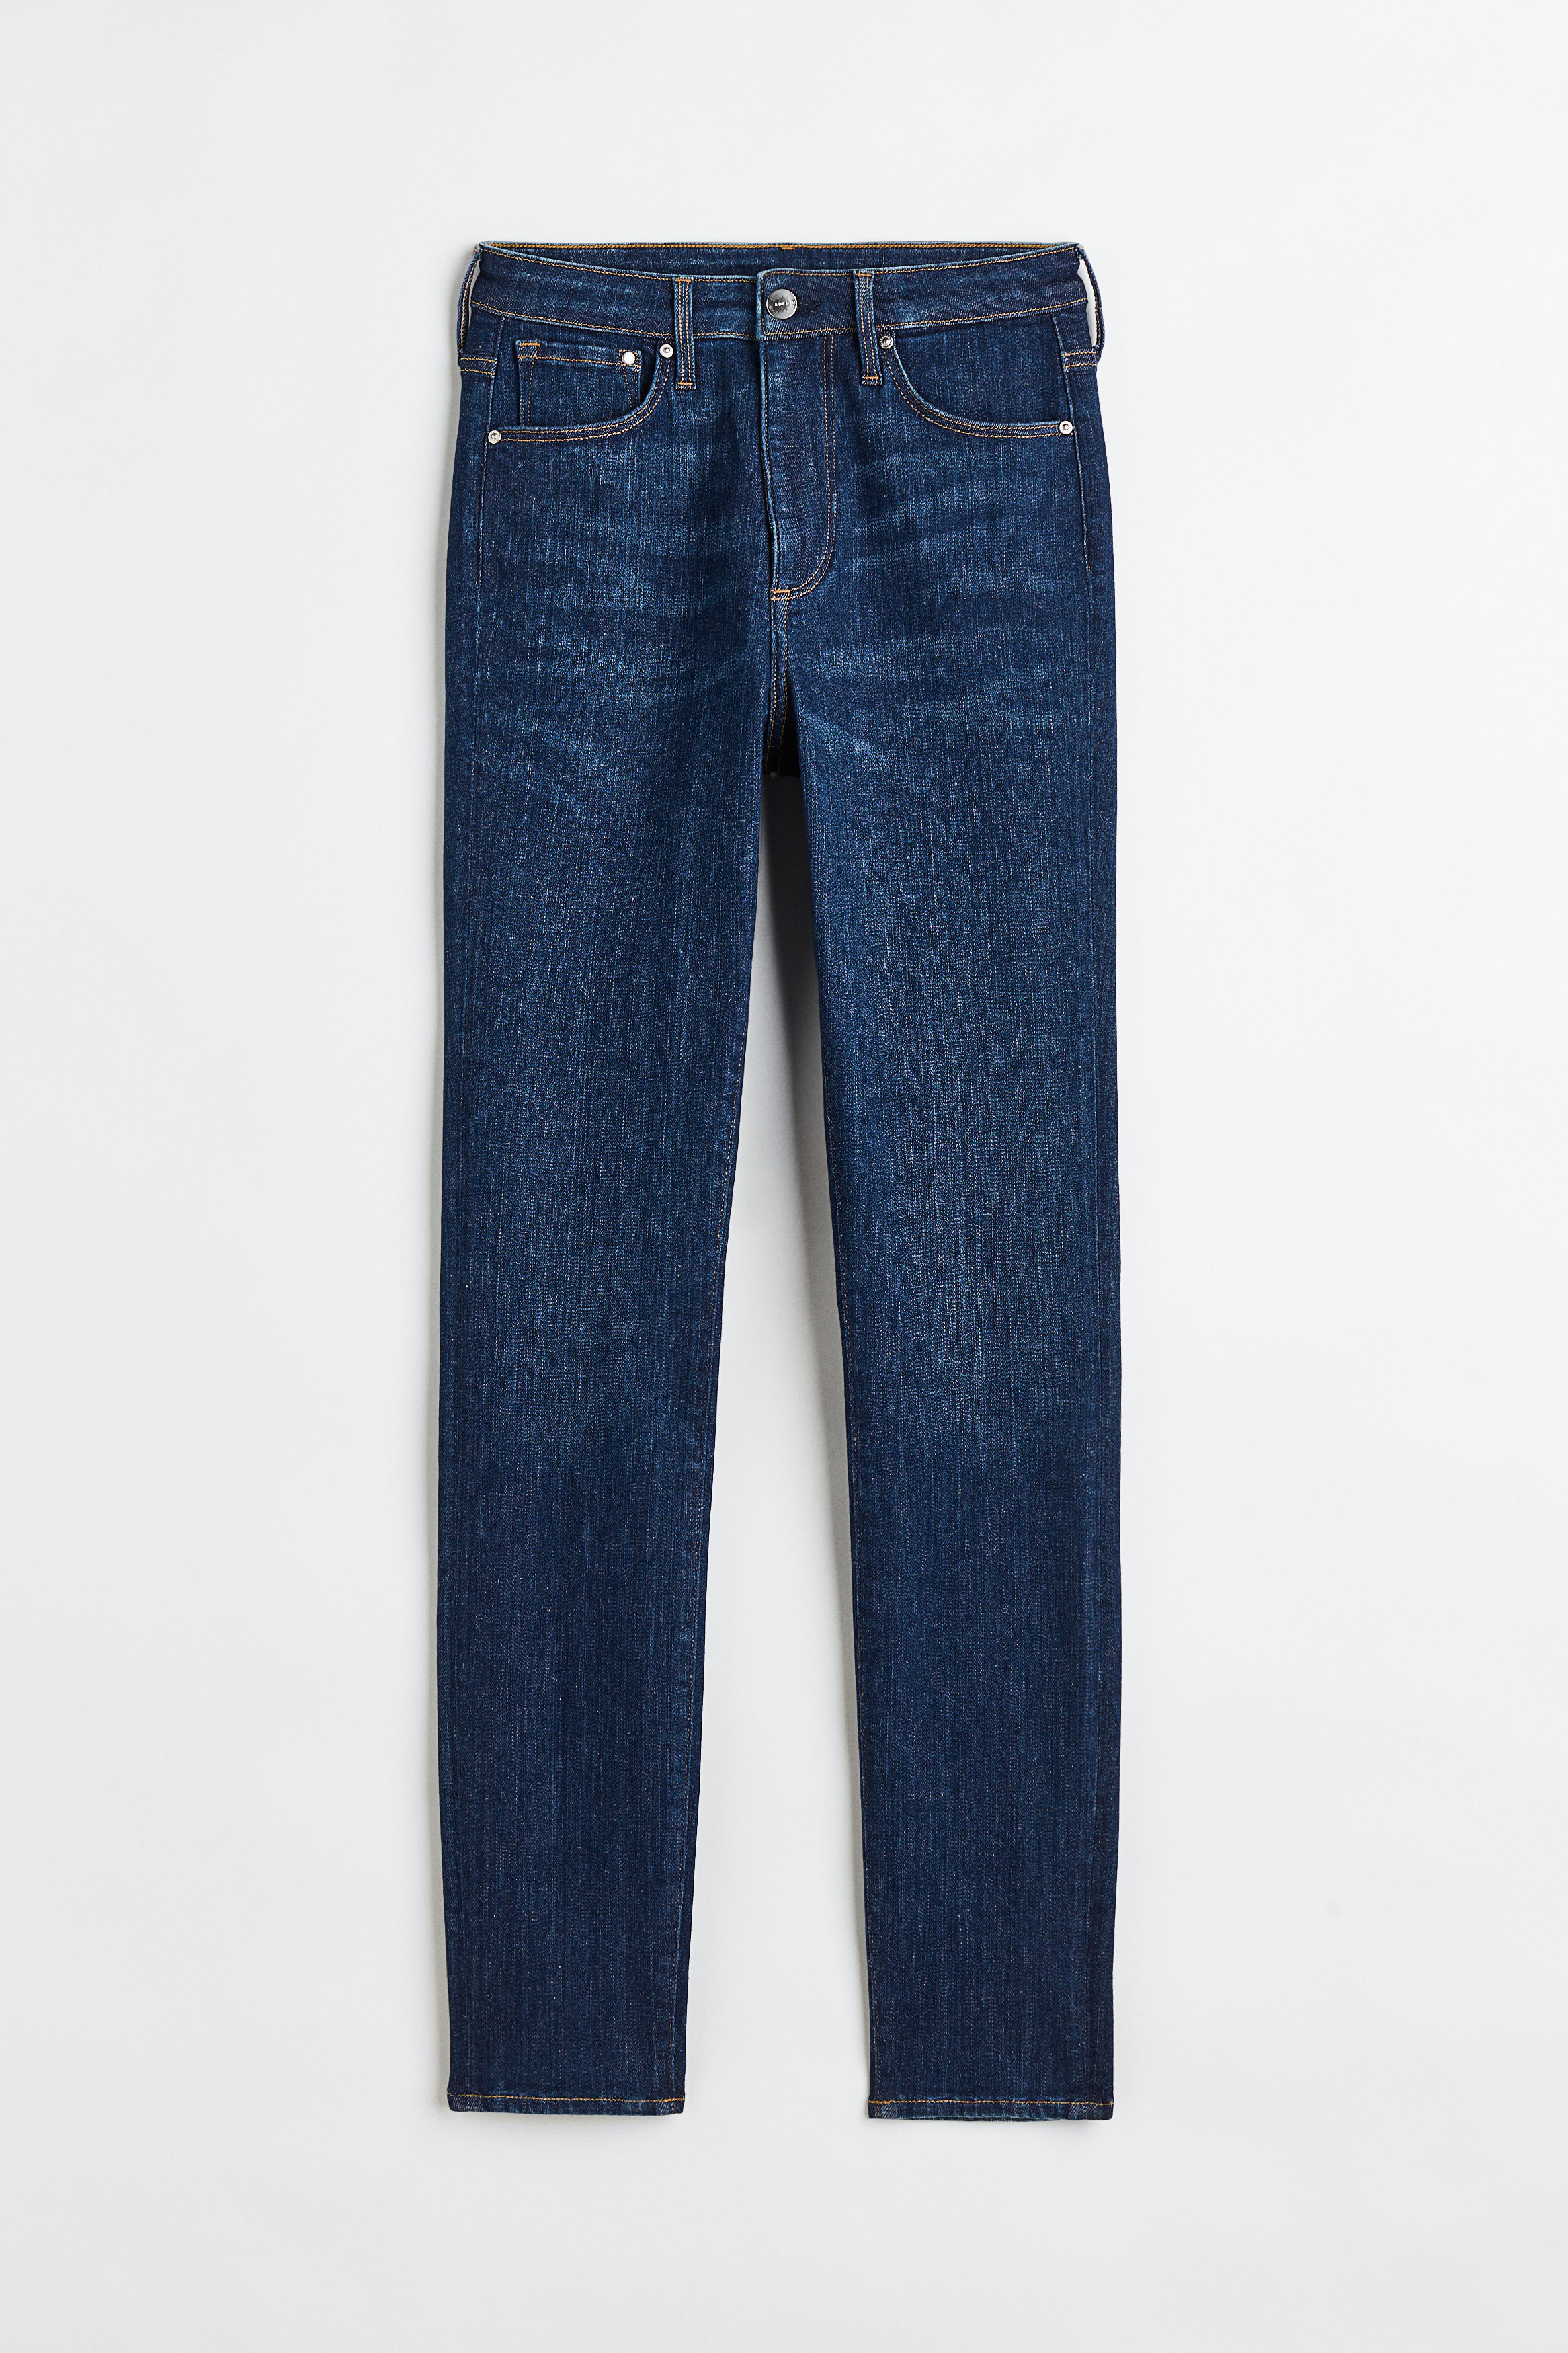 Billede af H&M Shaping Skinny High Jeans Mørkeblå Denim, jeans. Farve: Dark blue denim I størrelse 34